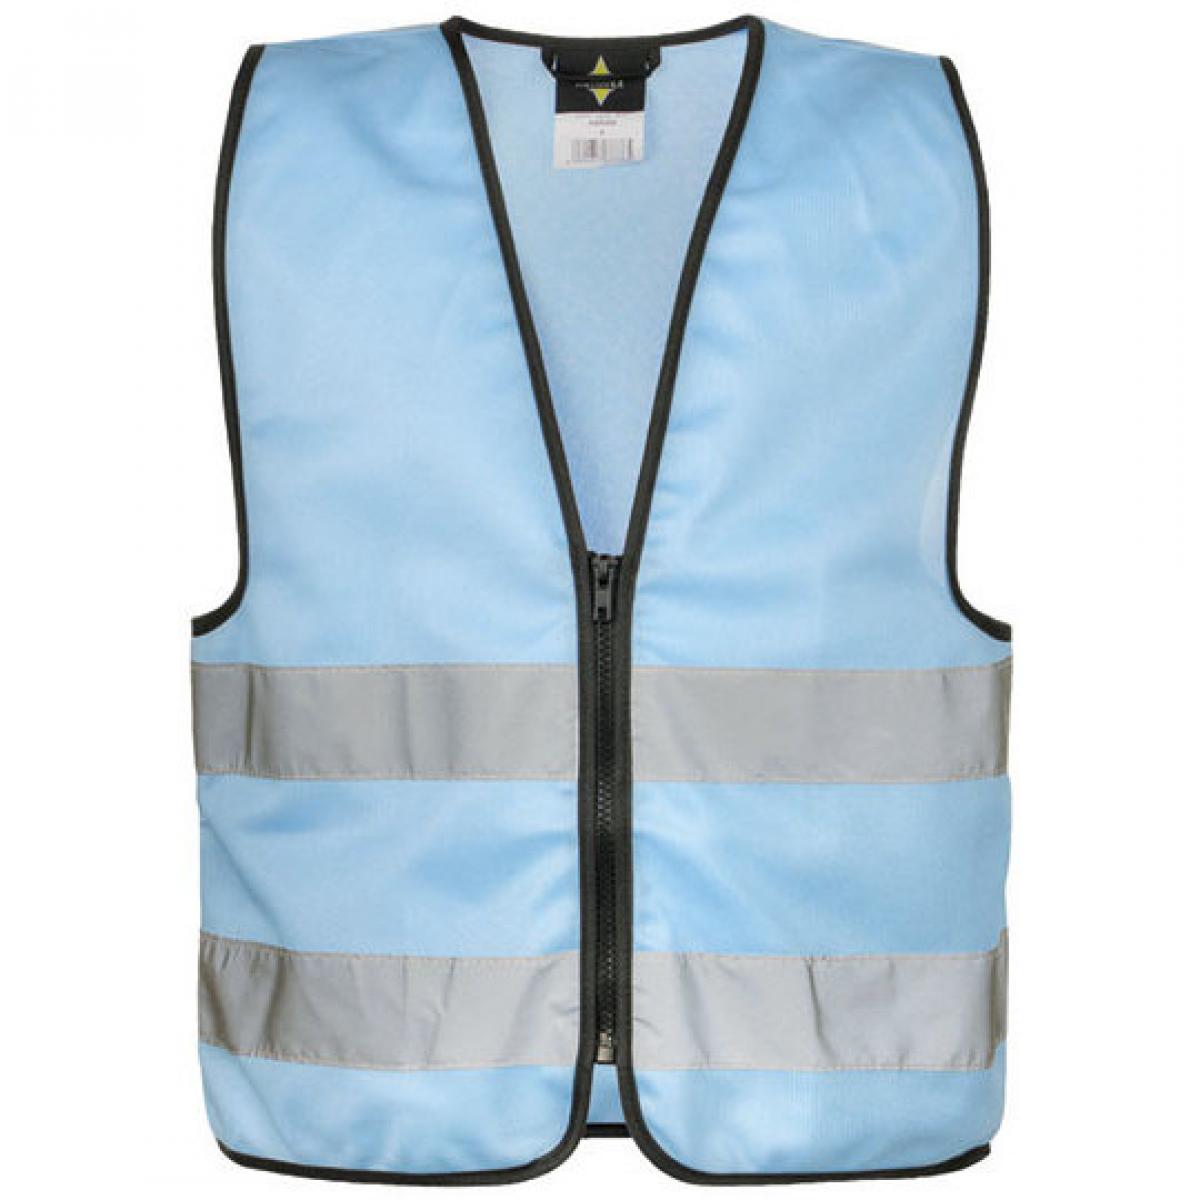 Hersteller: Korntex Herstellernummer: KWRX Artikelbezeichnung: Kinder Safety Vest for Kids with Zipper EN1150 Farbe: Sky Blue